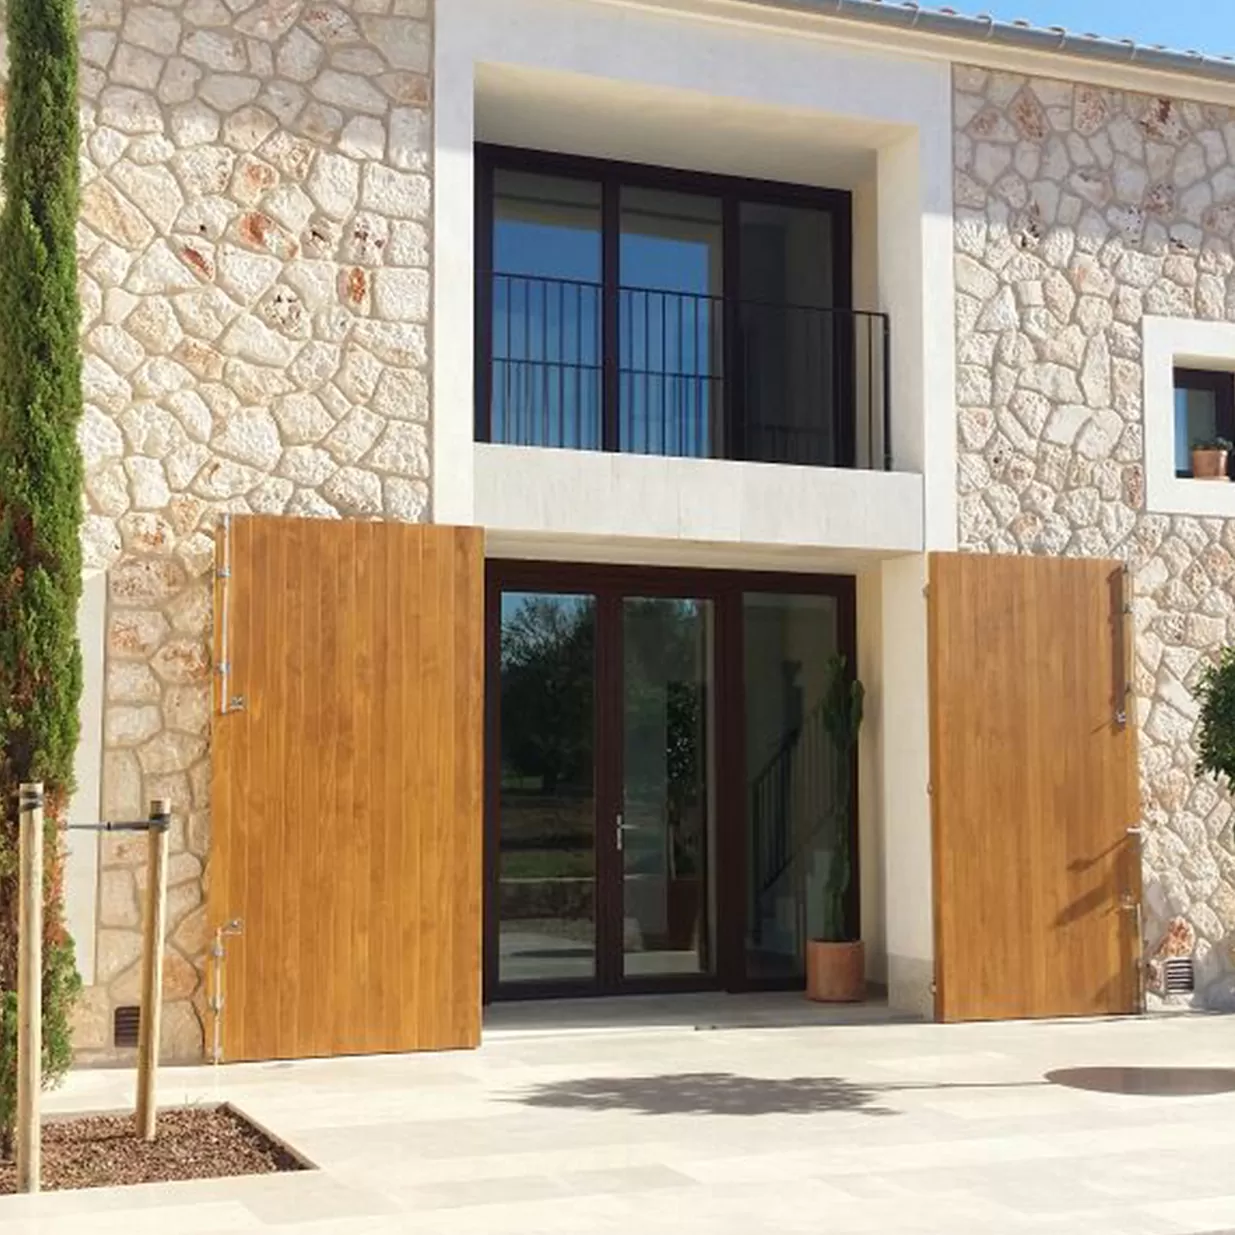 Window shutters in Menorca